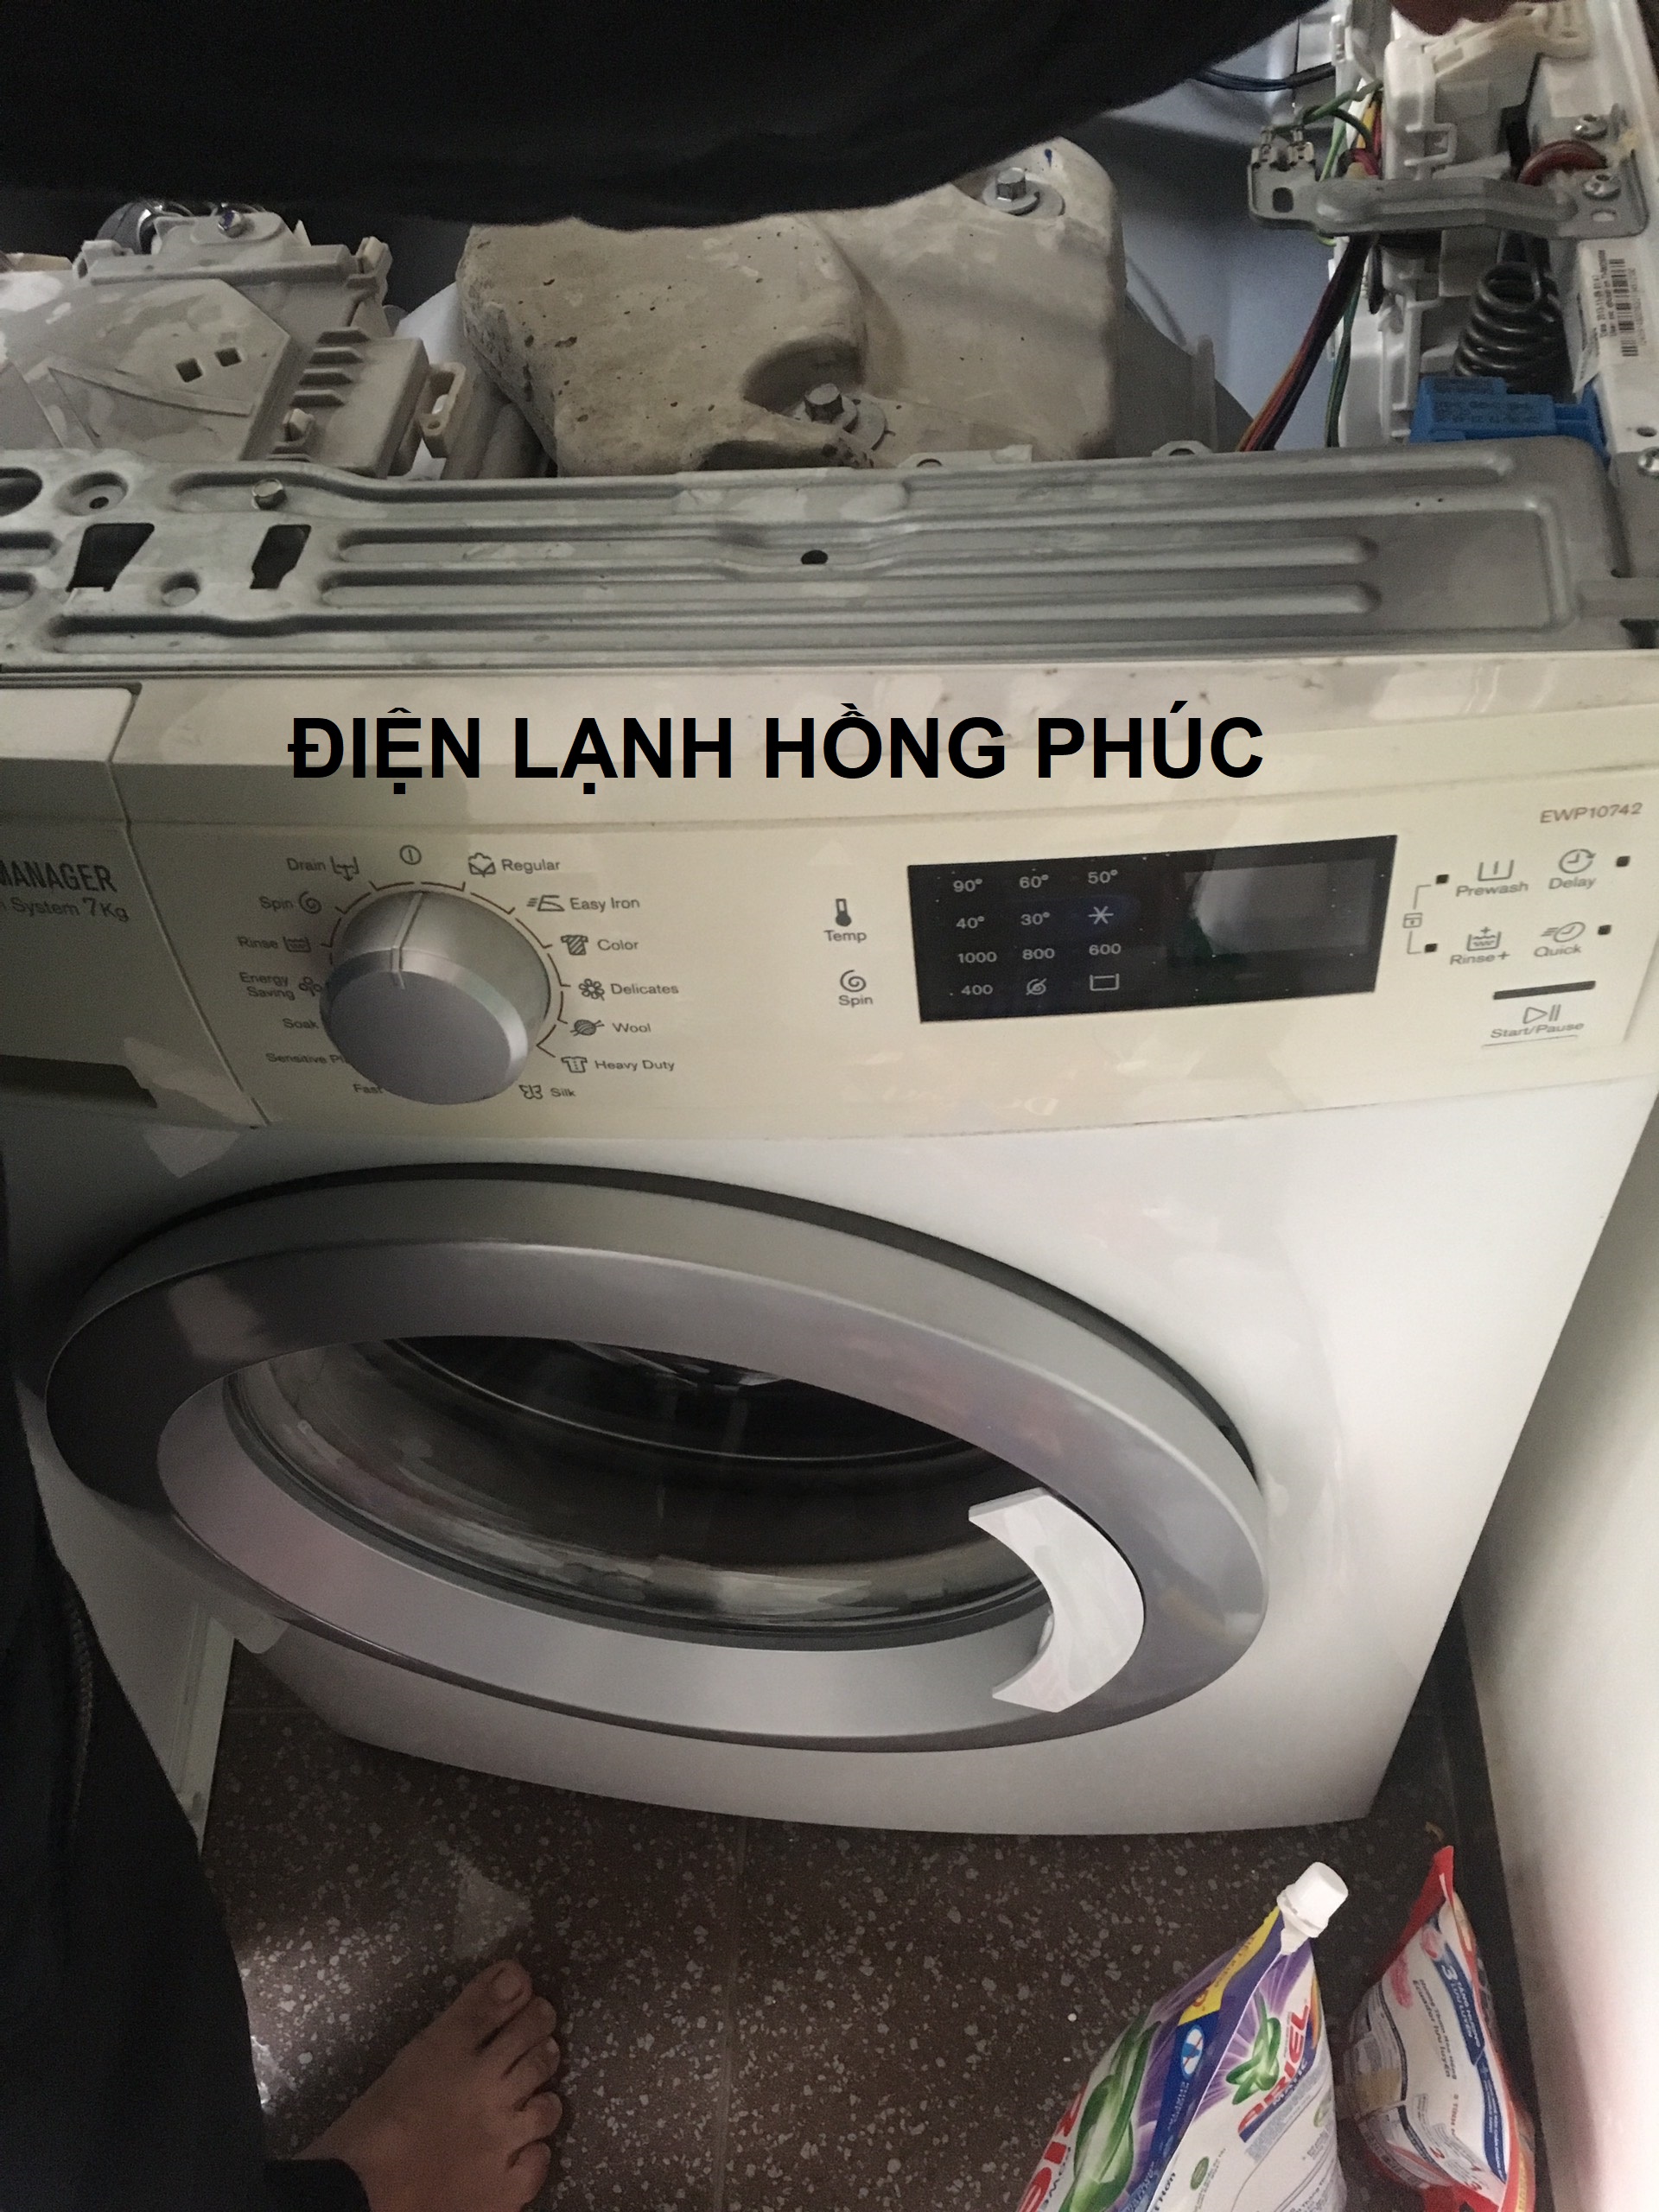 hướng dẫn khắc phục máy giặt Electrolux mất nguồn